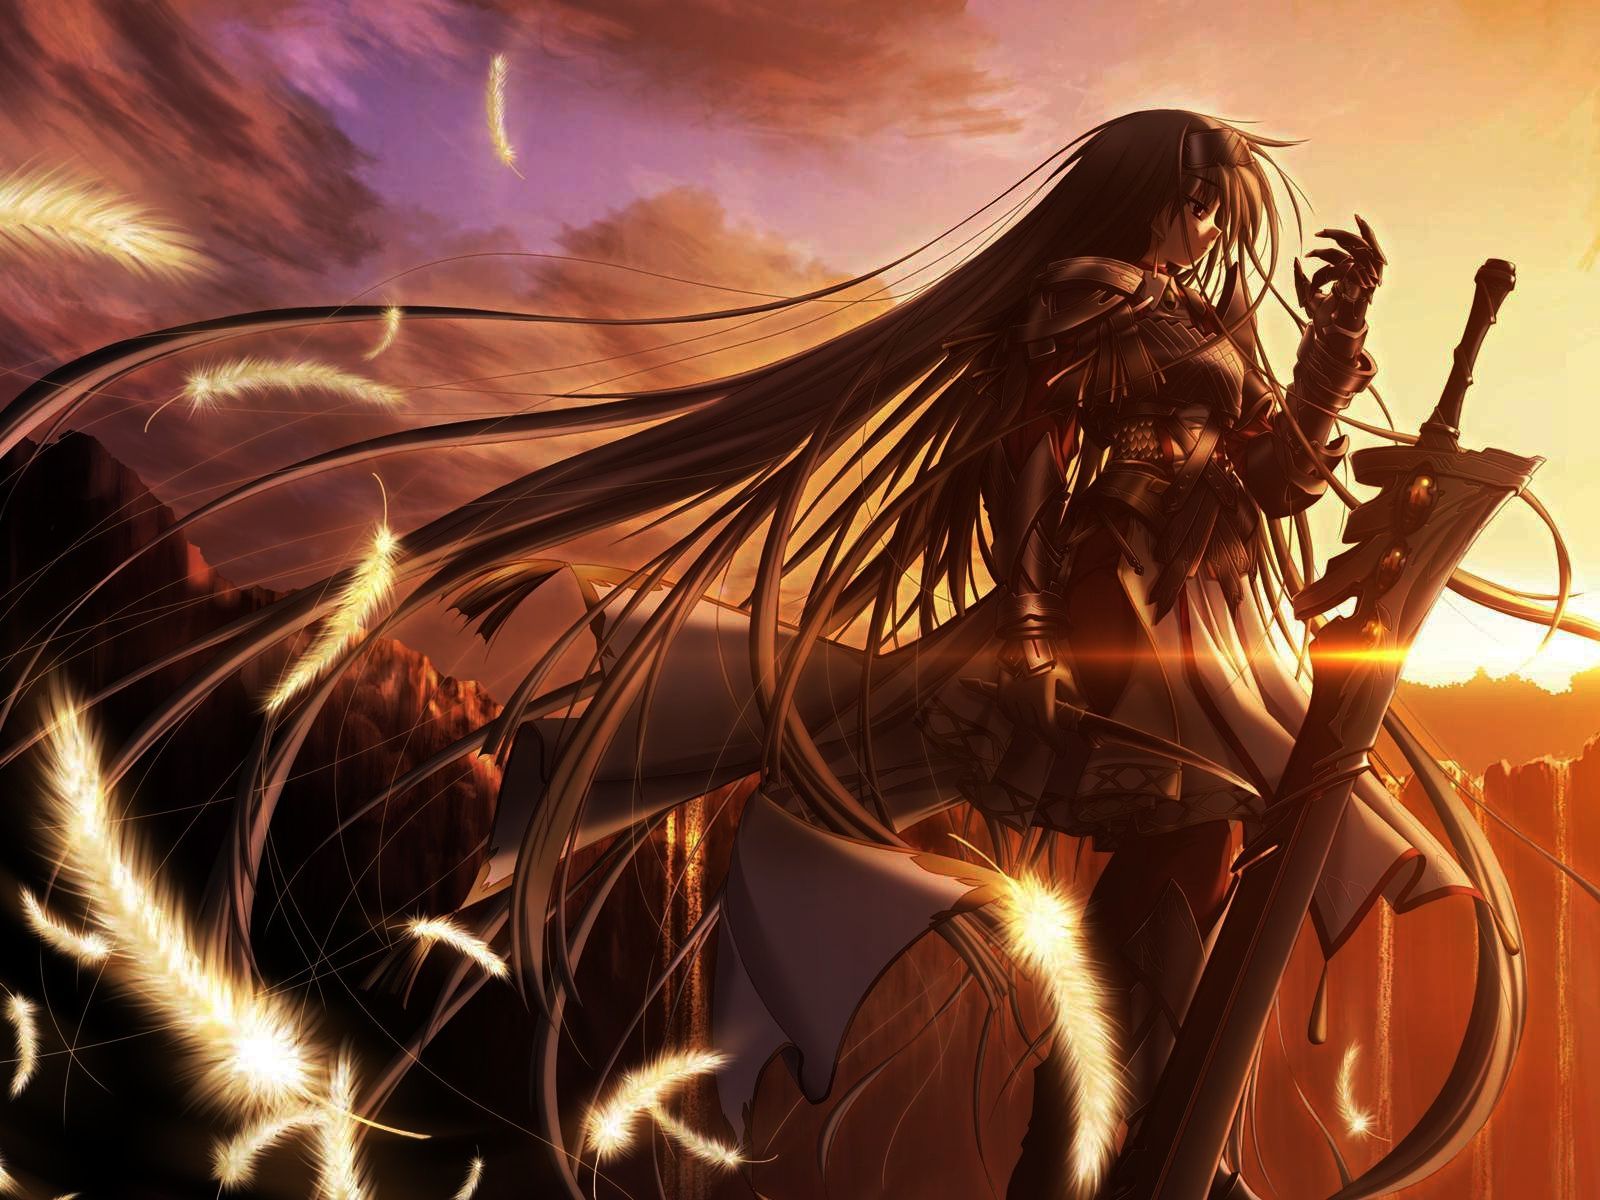 Anime Warrior Girl Wallpaper Free Anime Warrior Girl Background